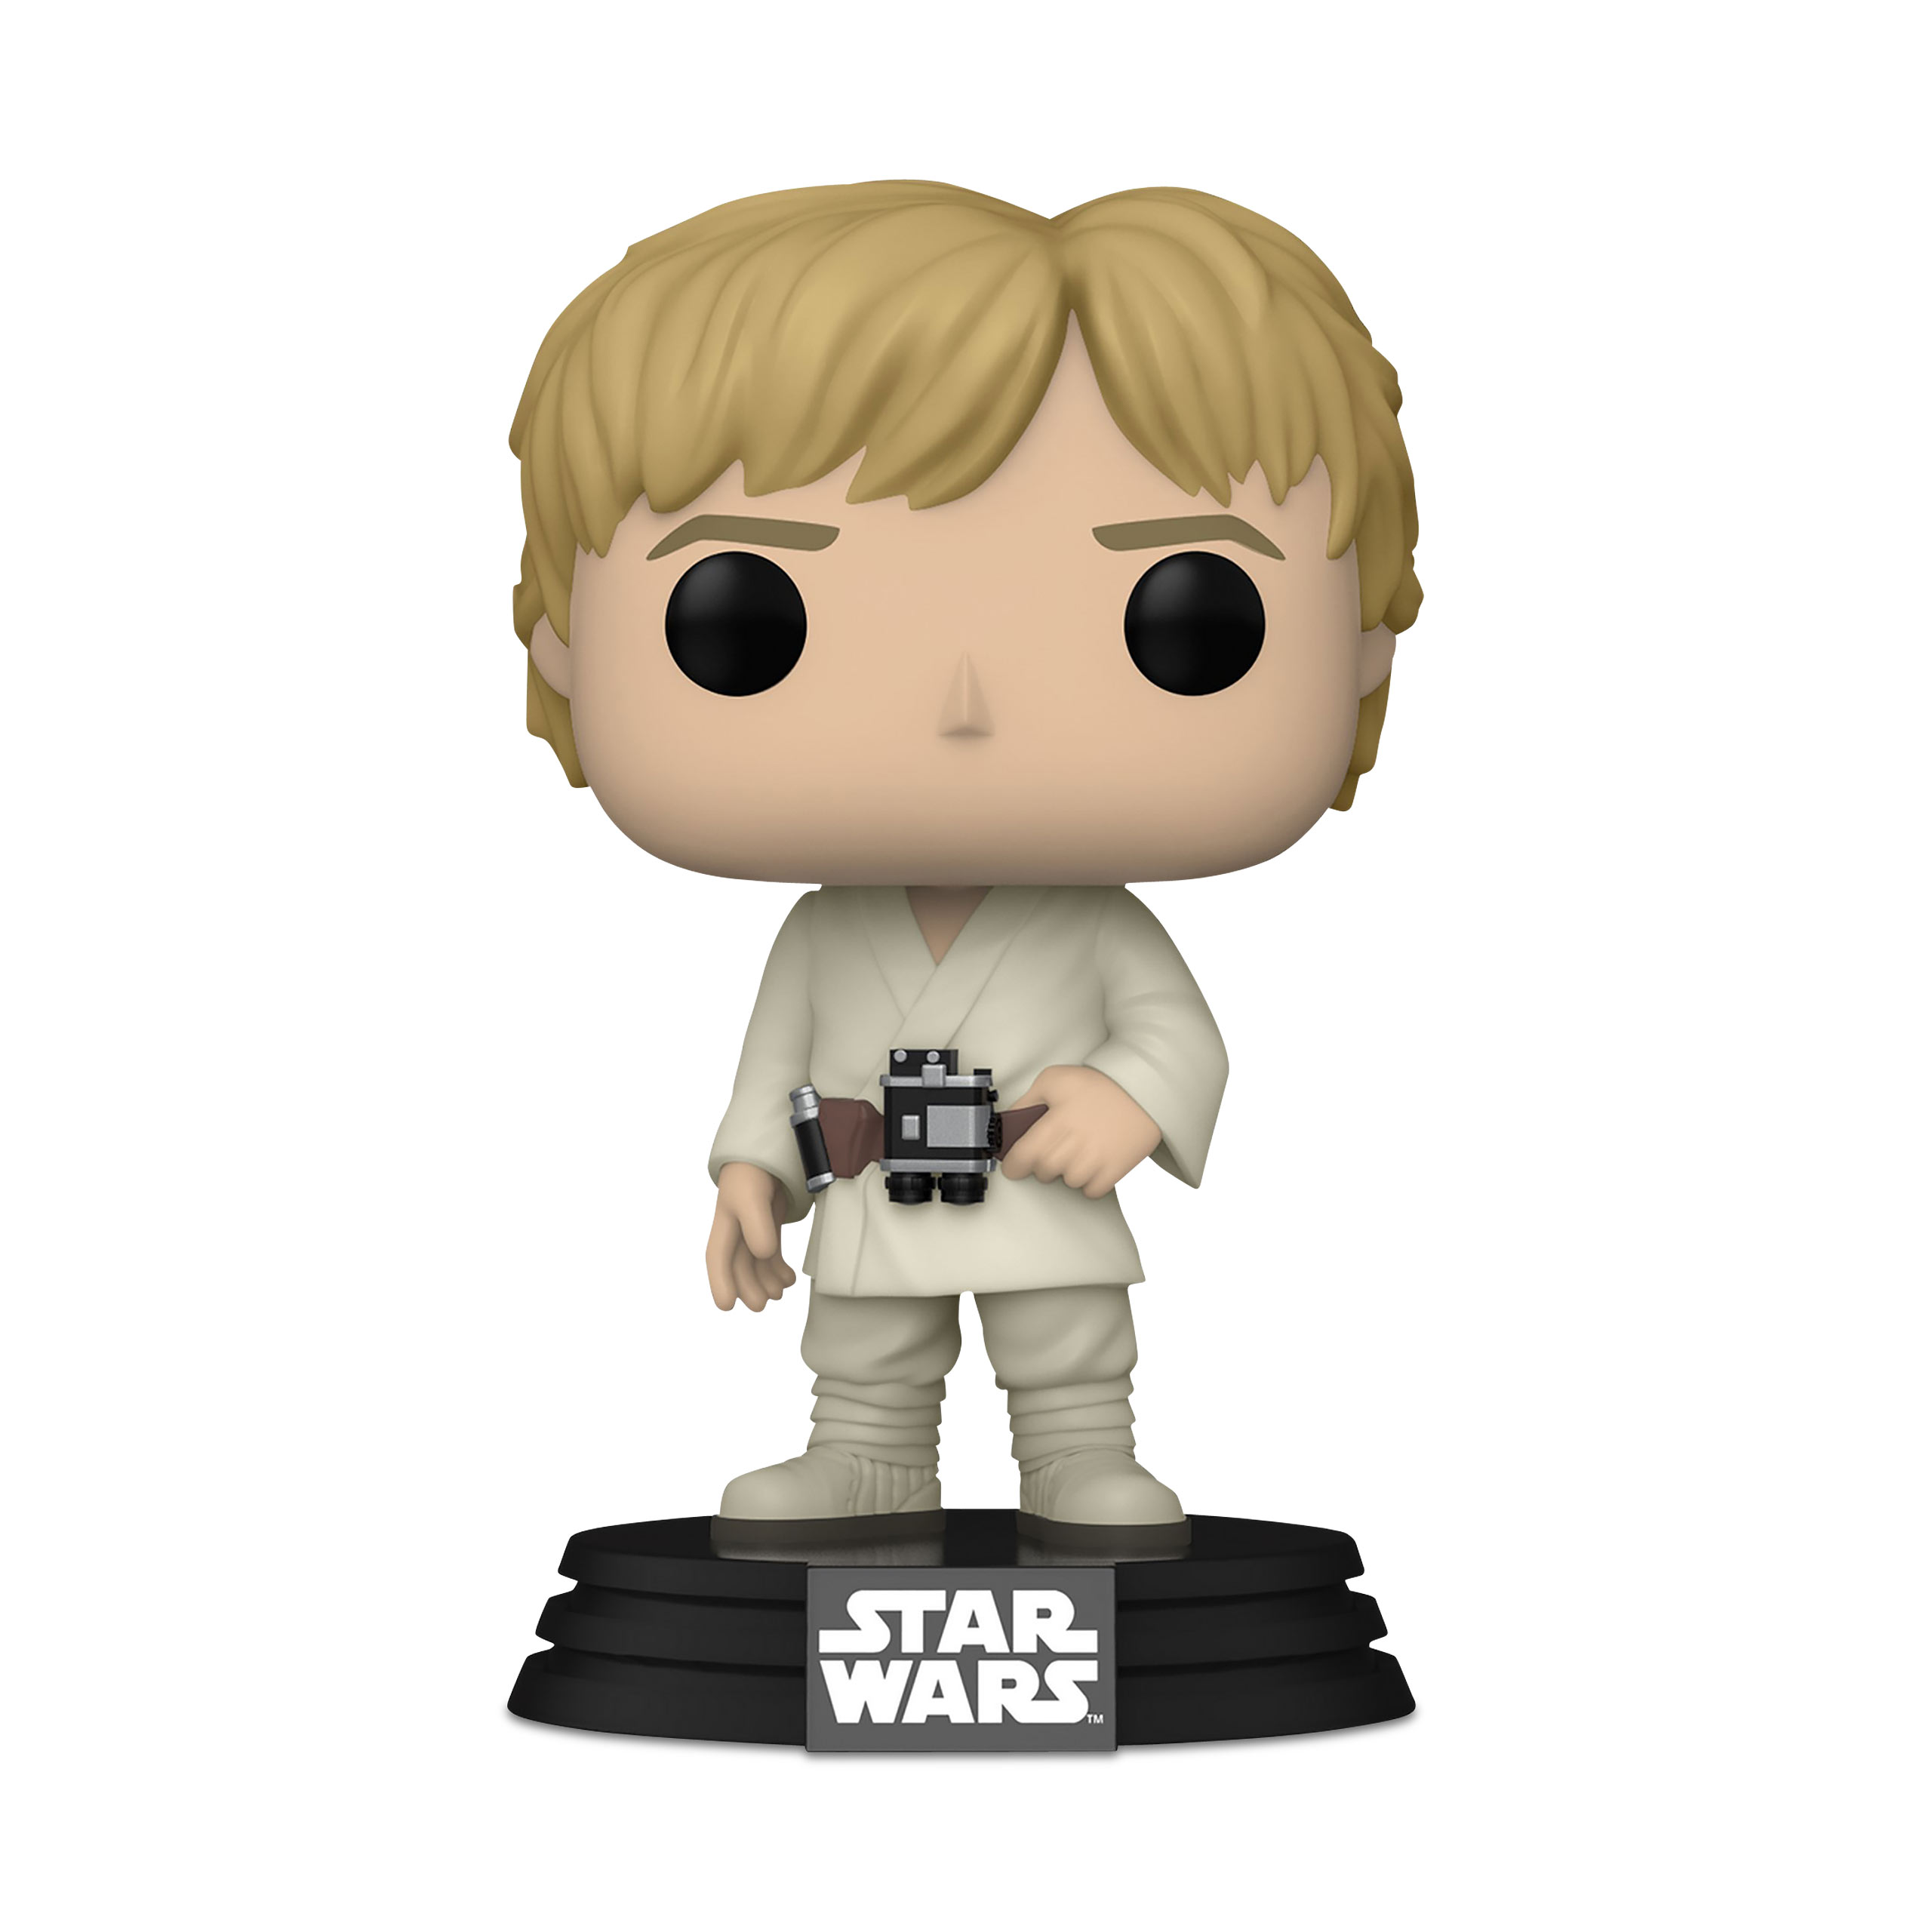 Star Wars - Luke Skywalker Funko Pop Bobblehead Figure